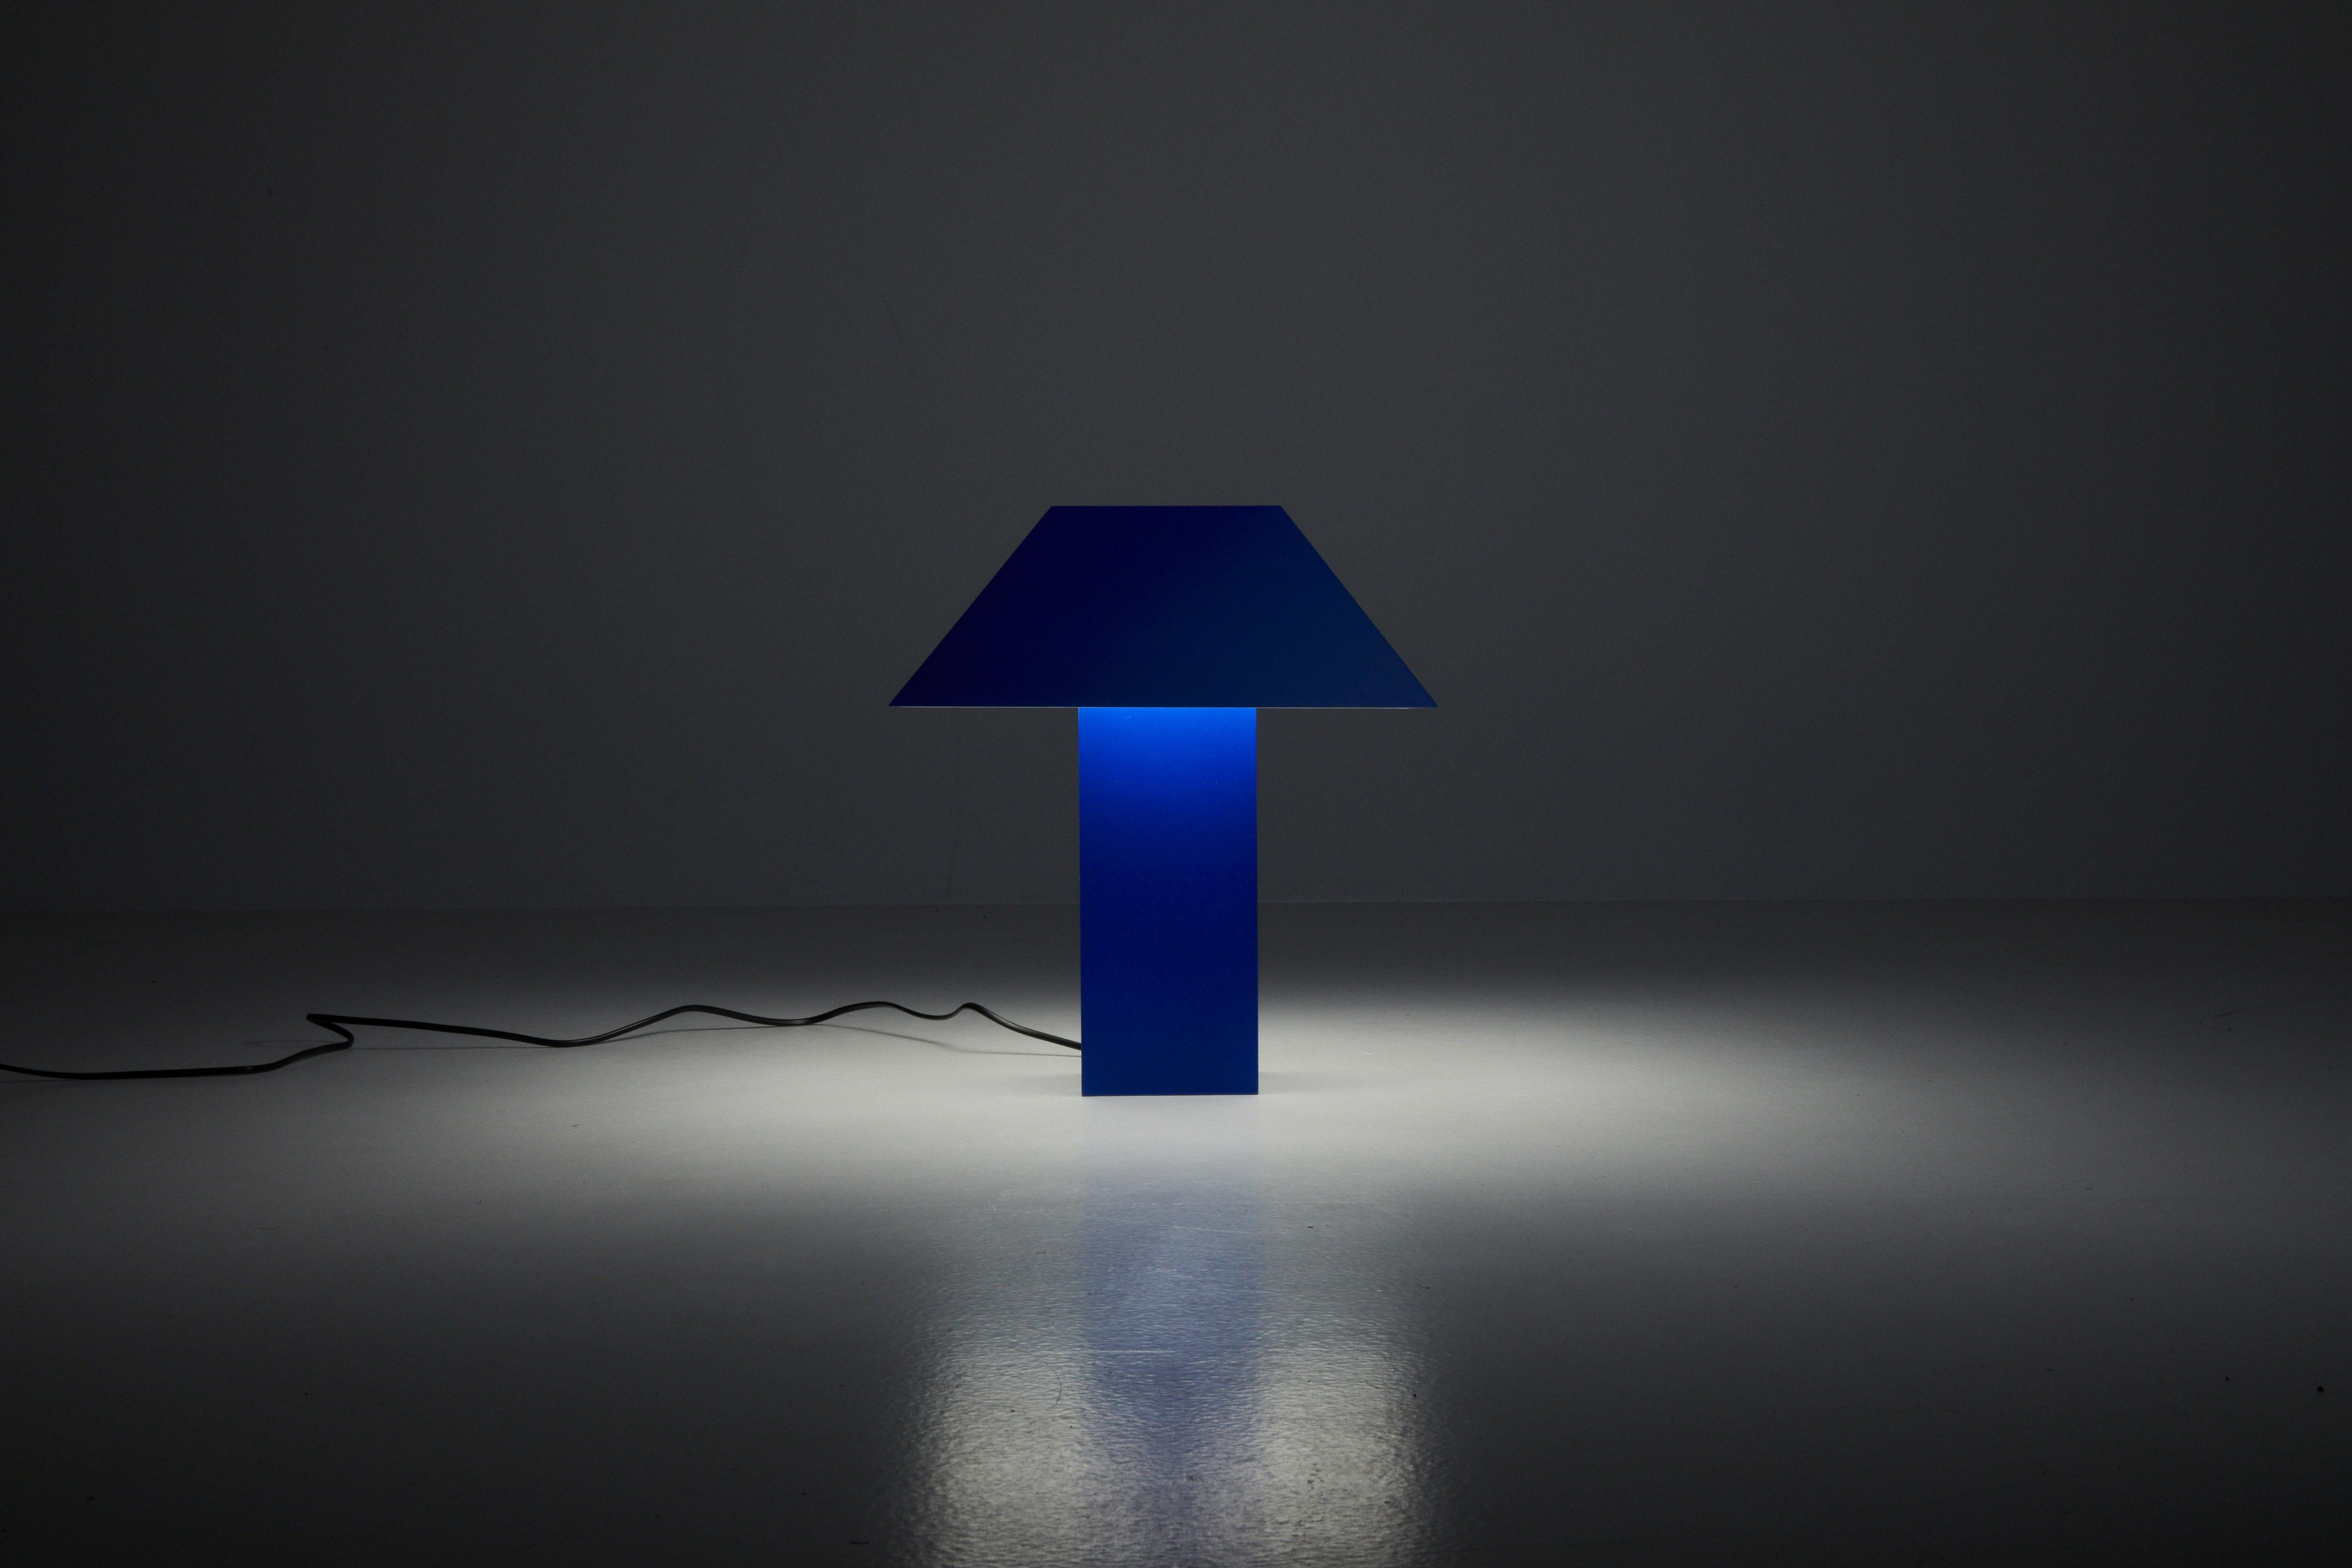 Lampe 53 - Blau

Inspiriert von den Korklampen der 70er Jahre, zeichnet sich diese Leuchte durch ihren einzigartigen 53-Grad-Winkel aus, von dem sie ihren Namen ableitet.

Dieser einzigartige Winkel dient als Mittelpunkt und zeigt eine sorgfältige